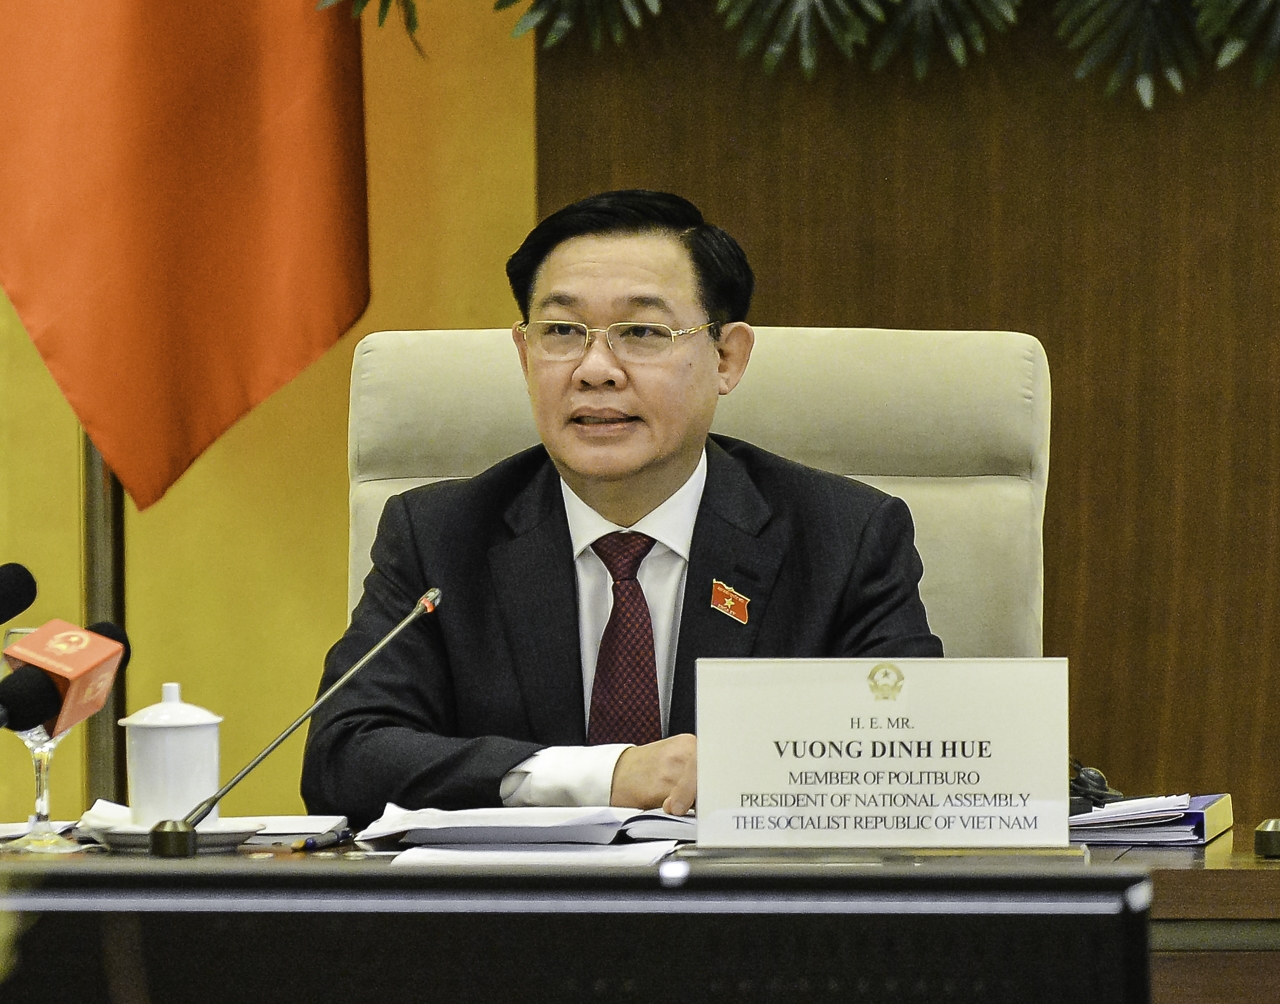 Quốc hội Việt Nam sẽ luôn đồng hành và tạo mọi điều kiện thuận lợi để các doanh nghiệp nước ngoài, trong đó có doanh nghiệp Hoa Kỳ đầu tư thành công, bền vững, lâu dài ở Việt Nam.